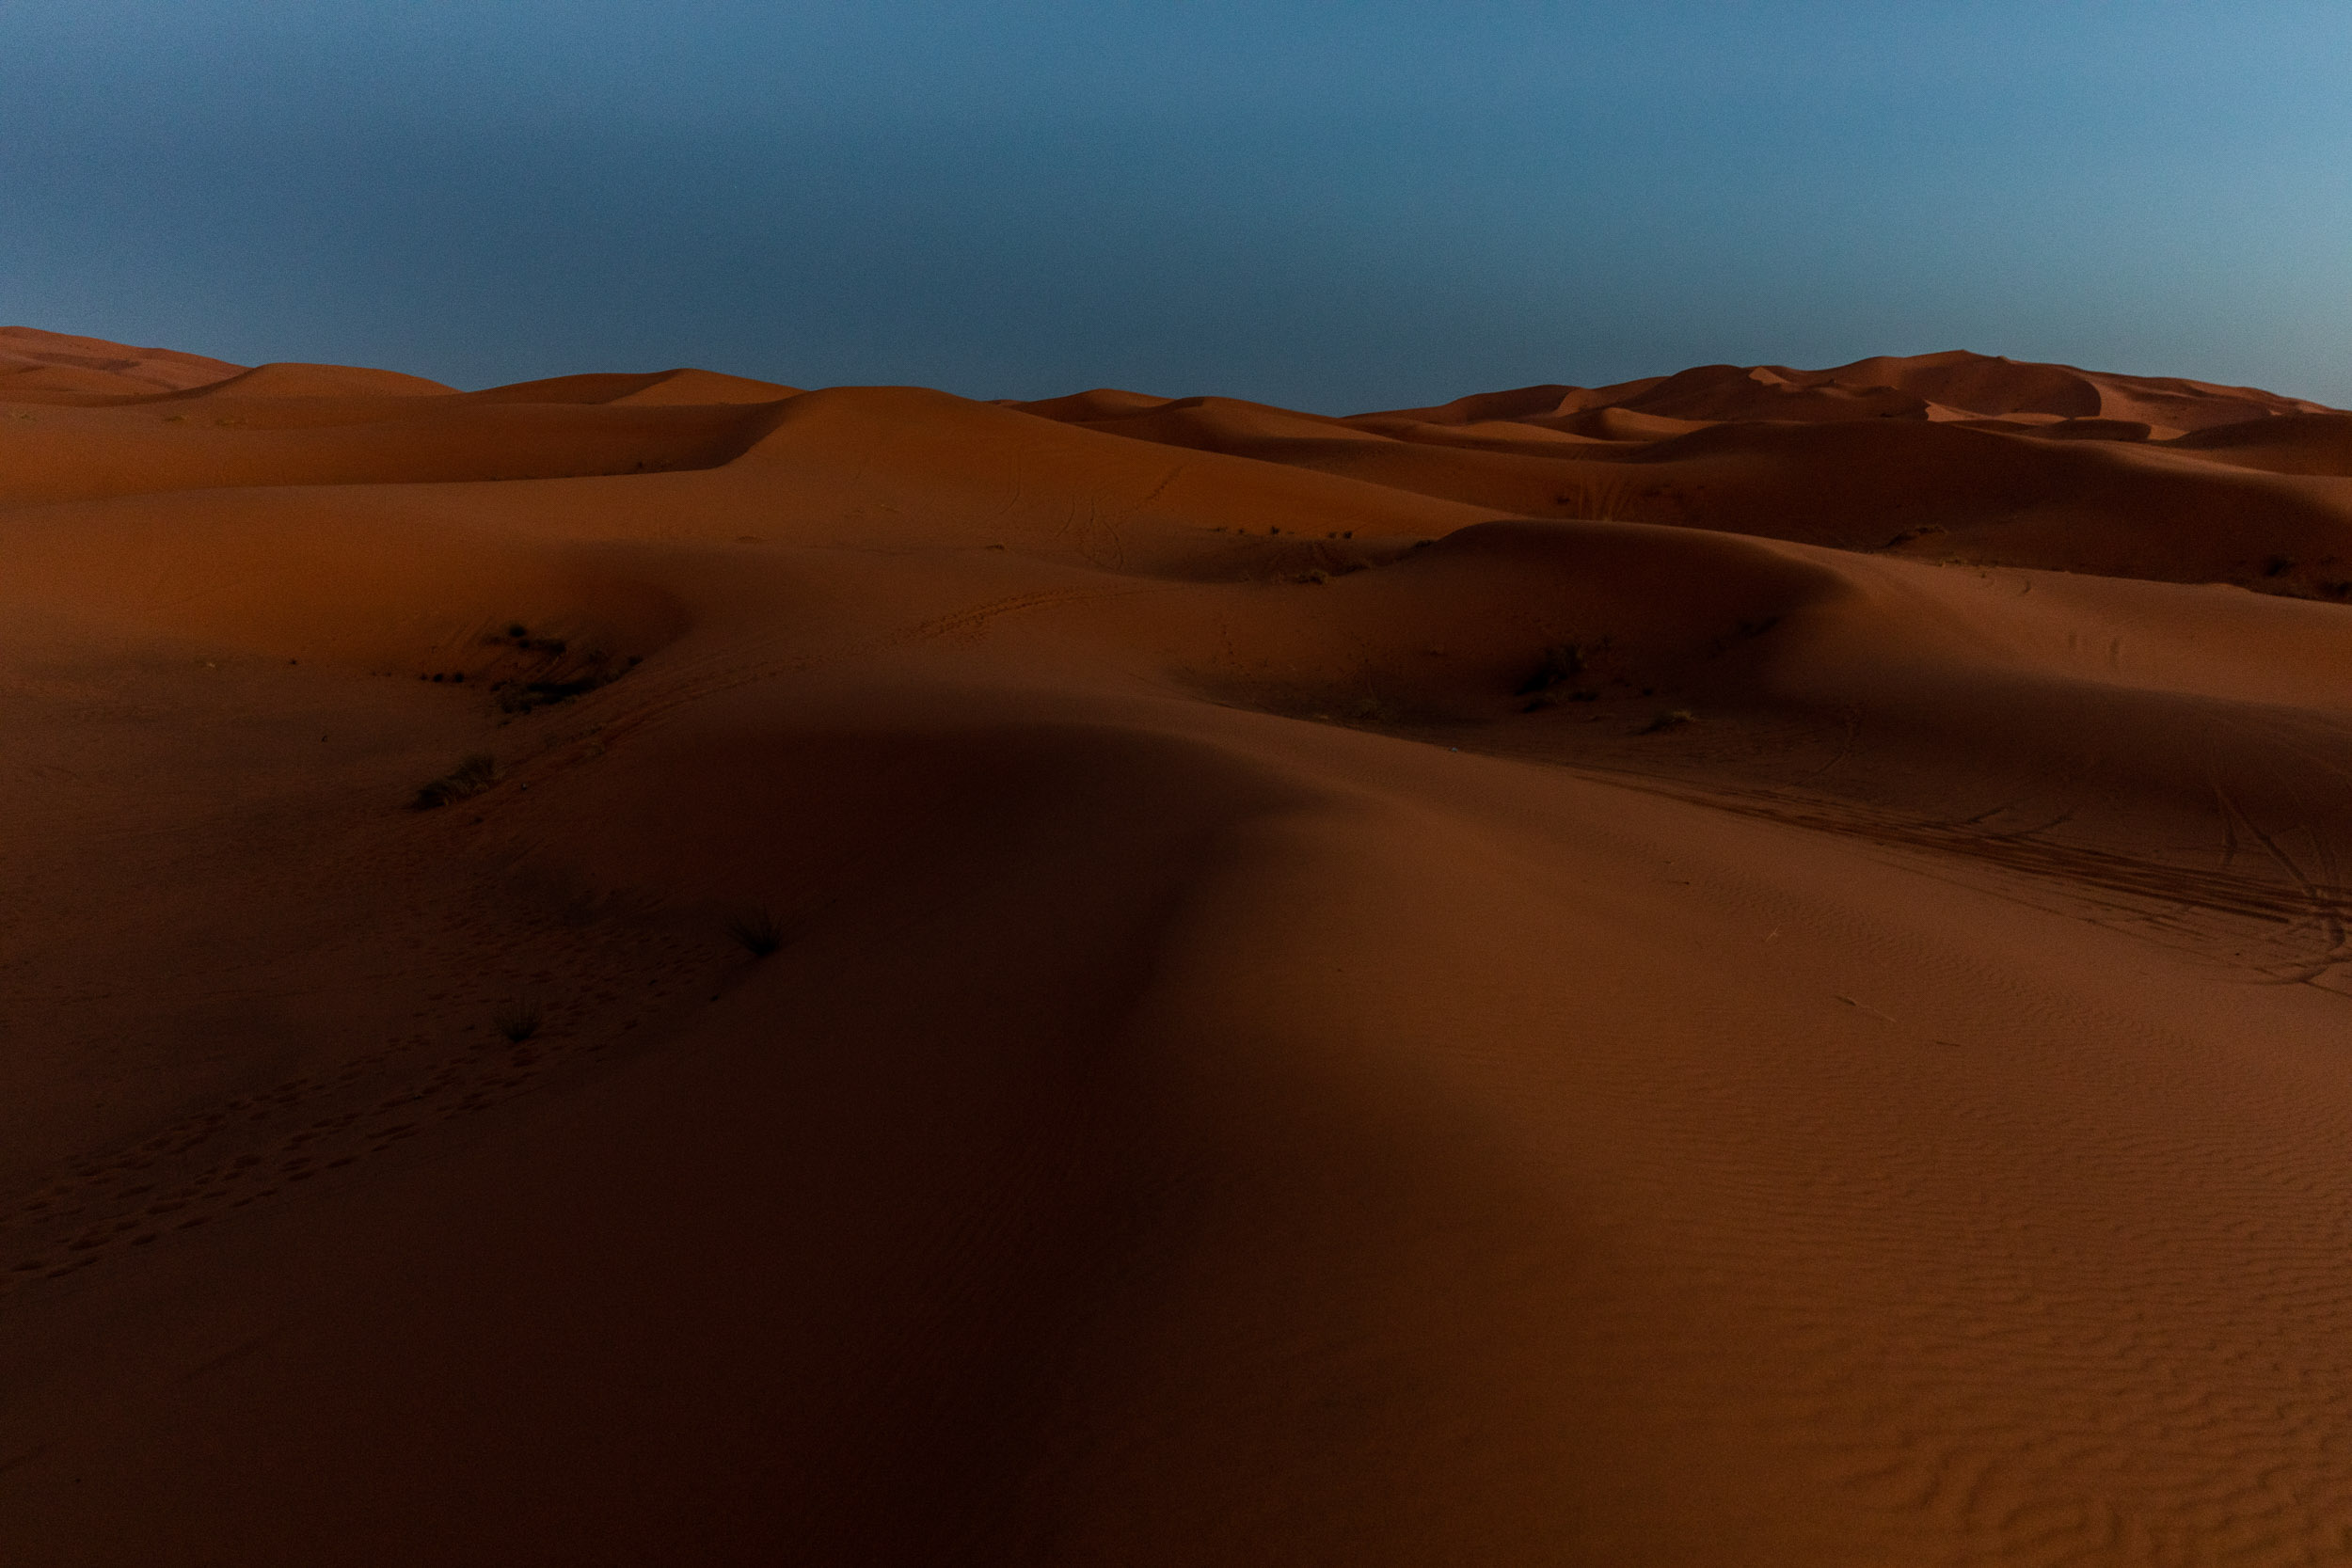 Sahara by night